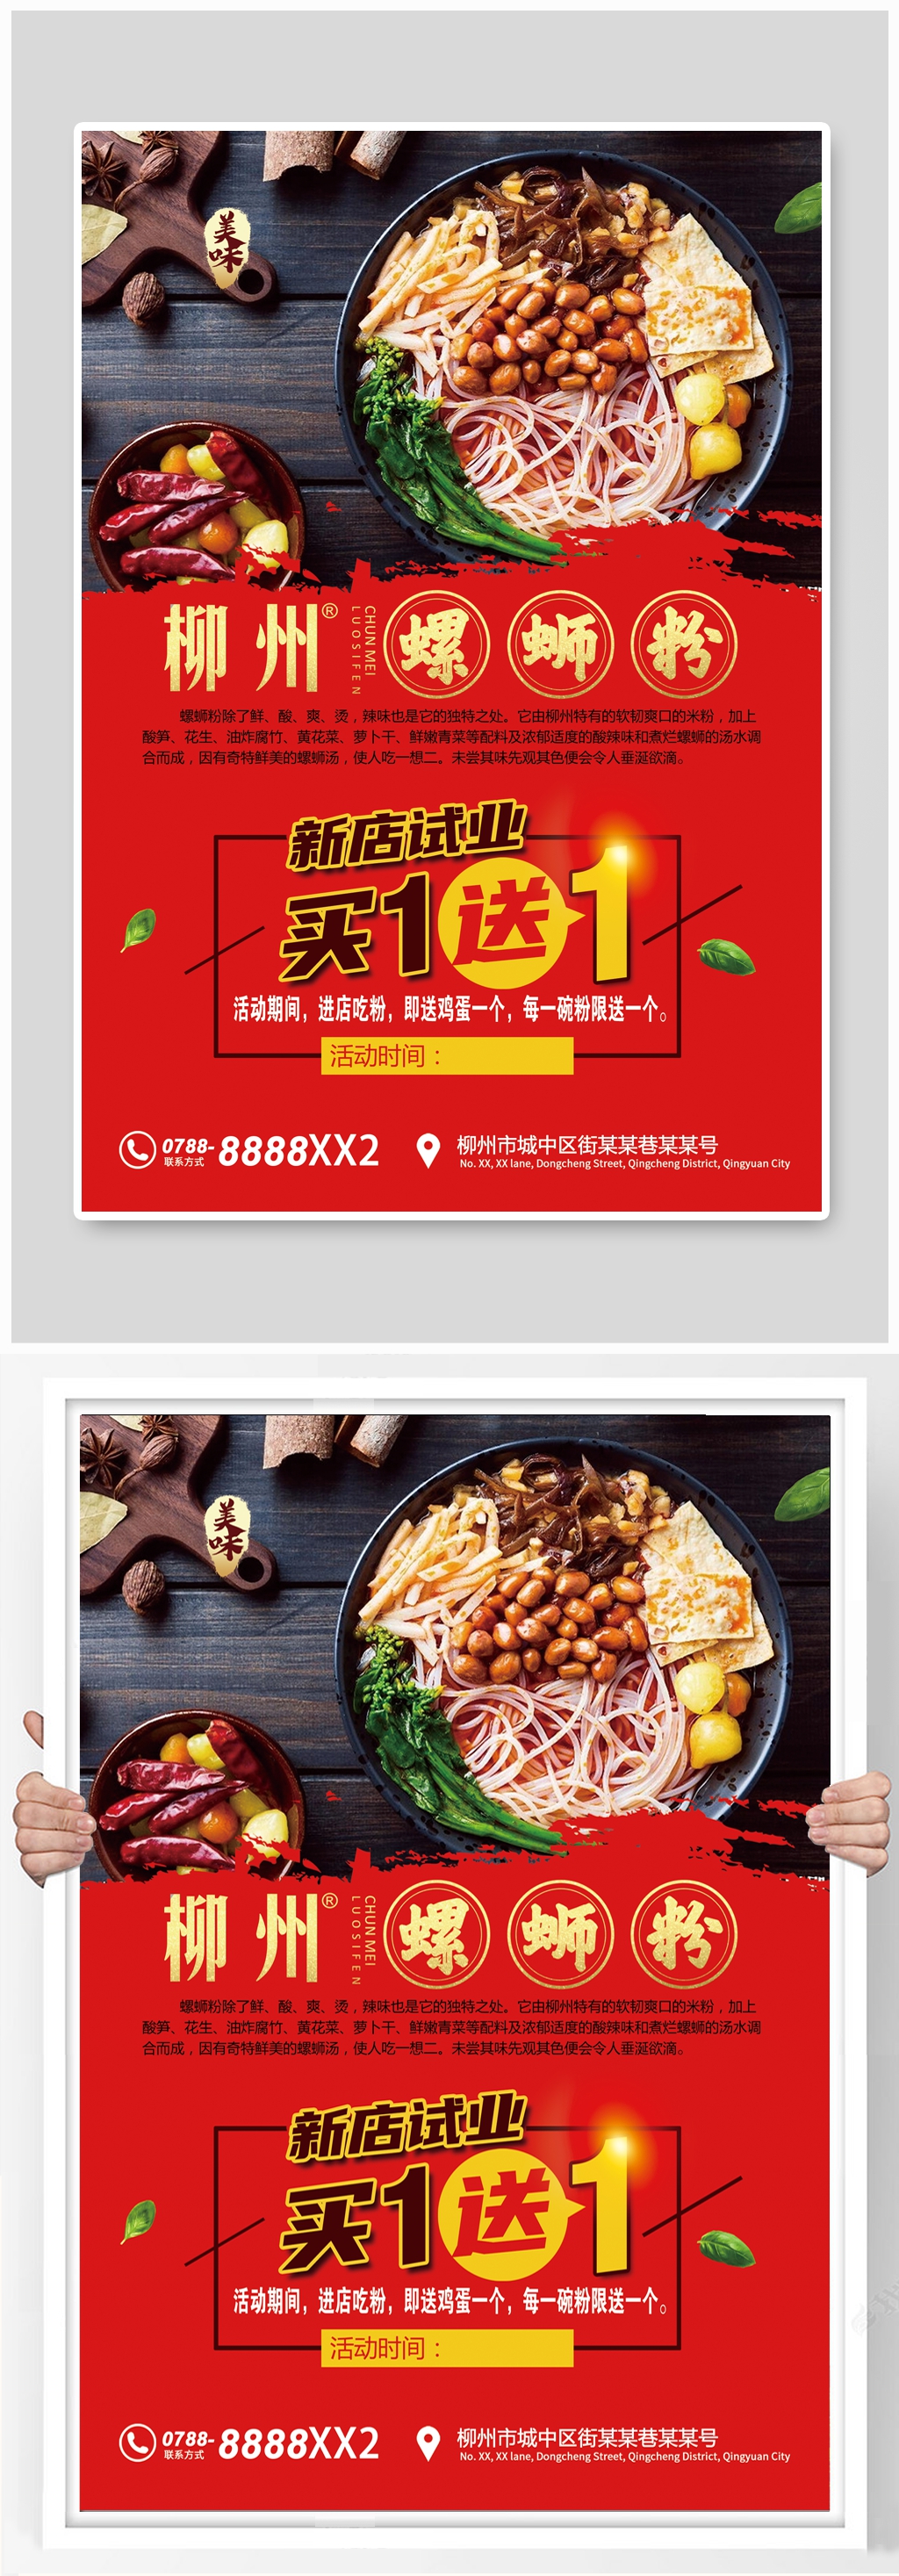 柳州螺蛳粉宣传广告海报